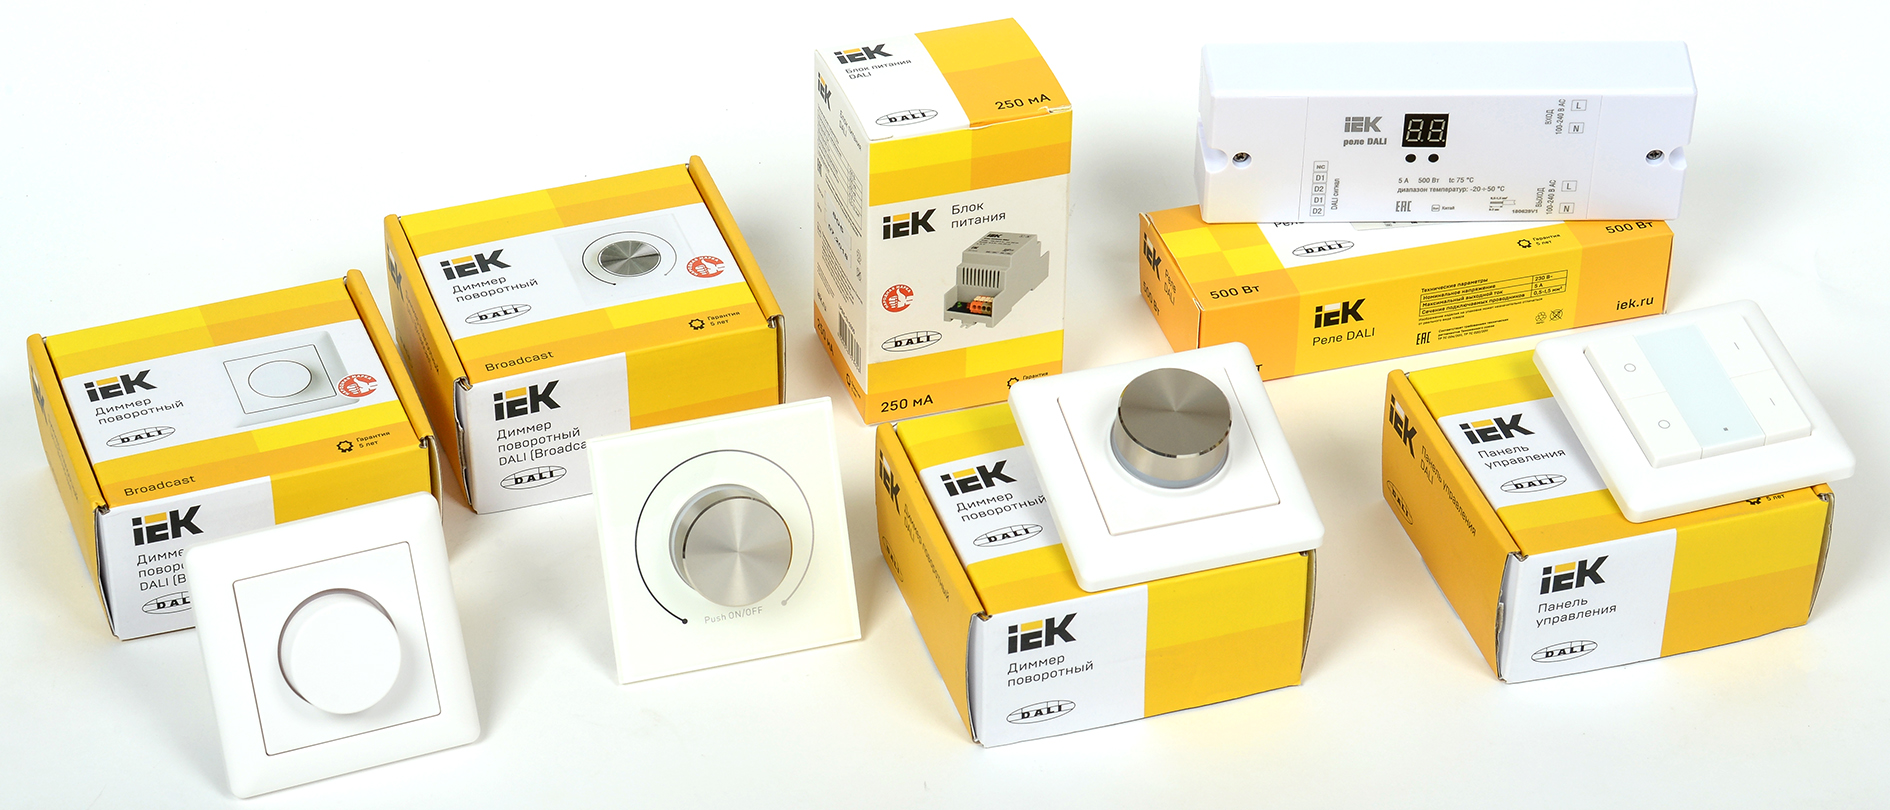 Новинка IEK Lighting – системы управления освещением по протоколу DALI